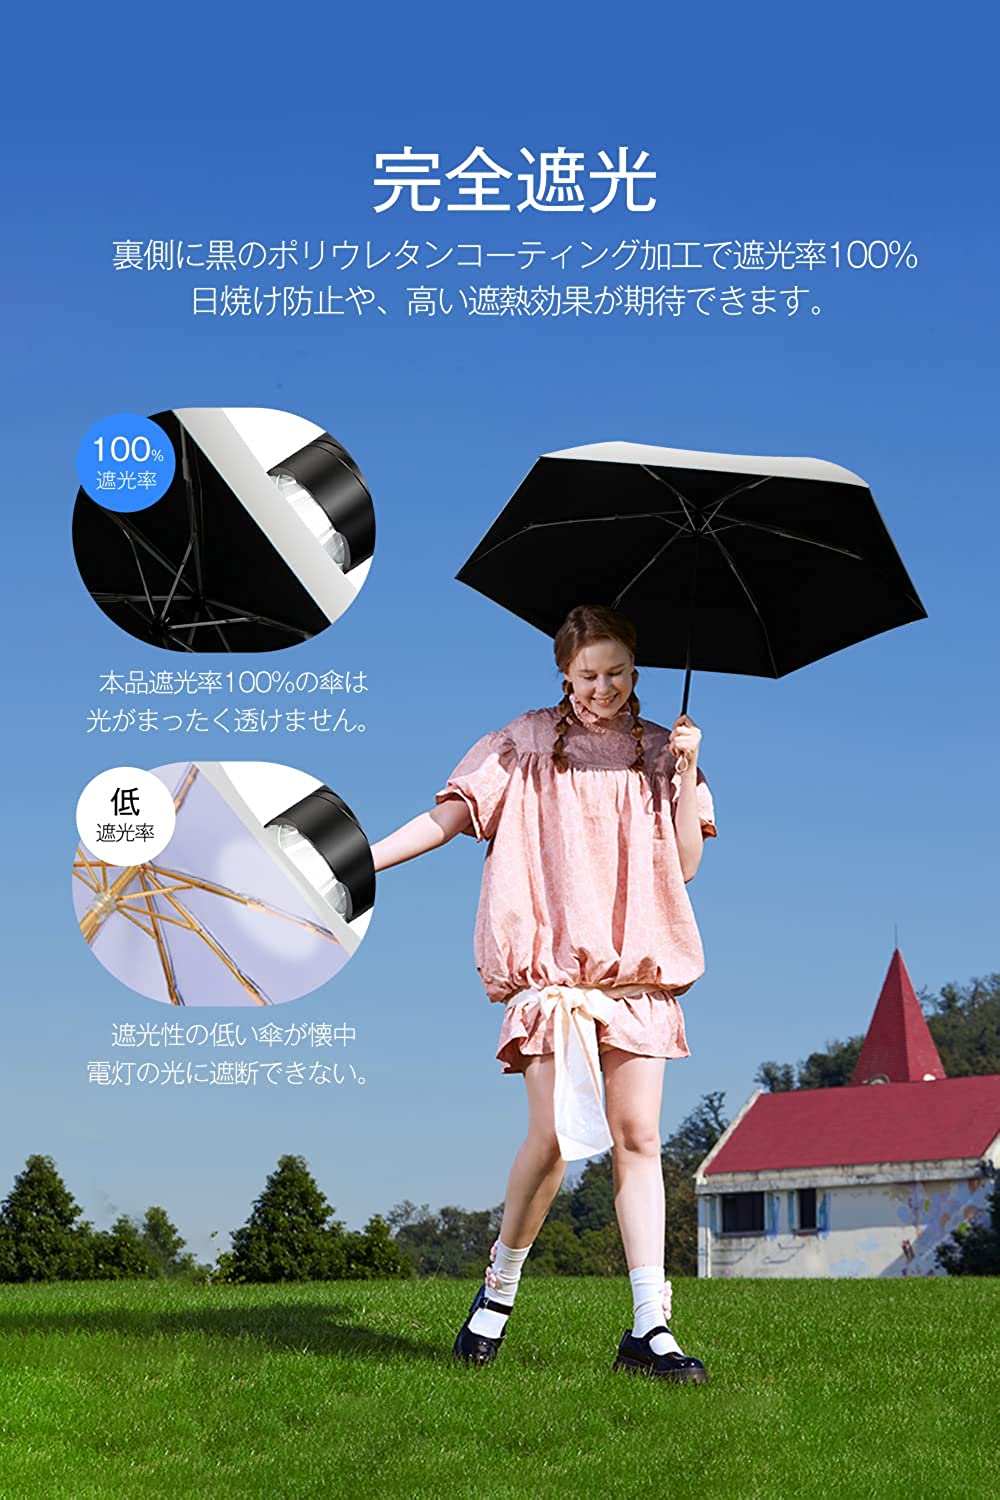 晴雨兼用・100%遮光 メンズ 自動開閉 折り畳み傘 折り畳み日傘 男女兼用 青